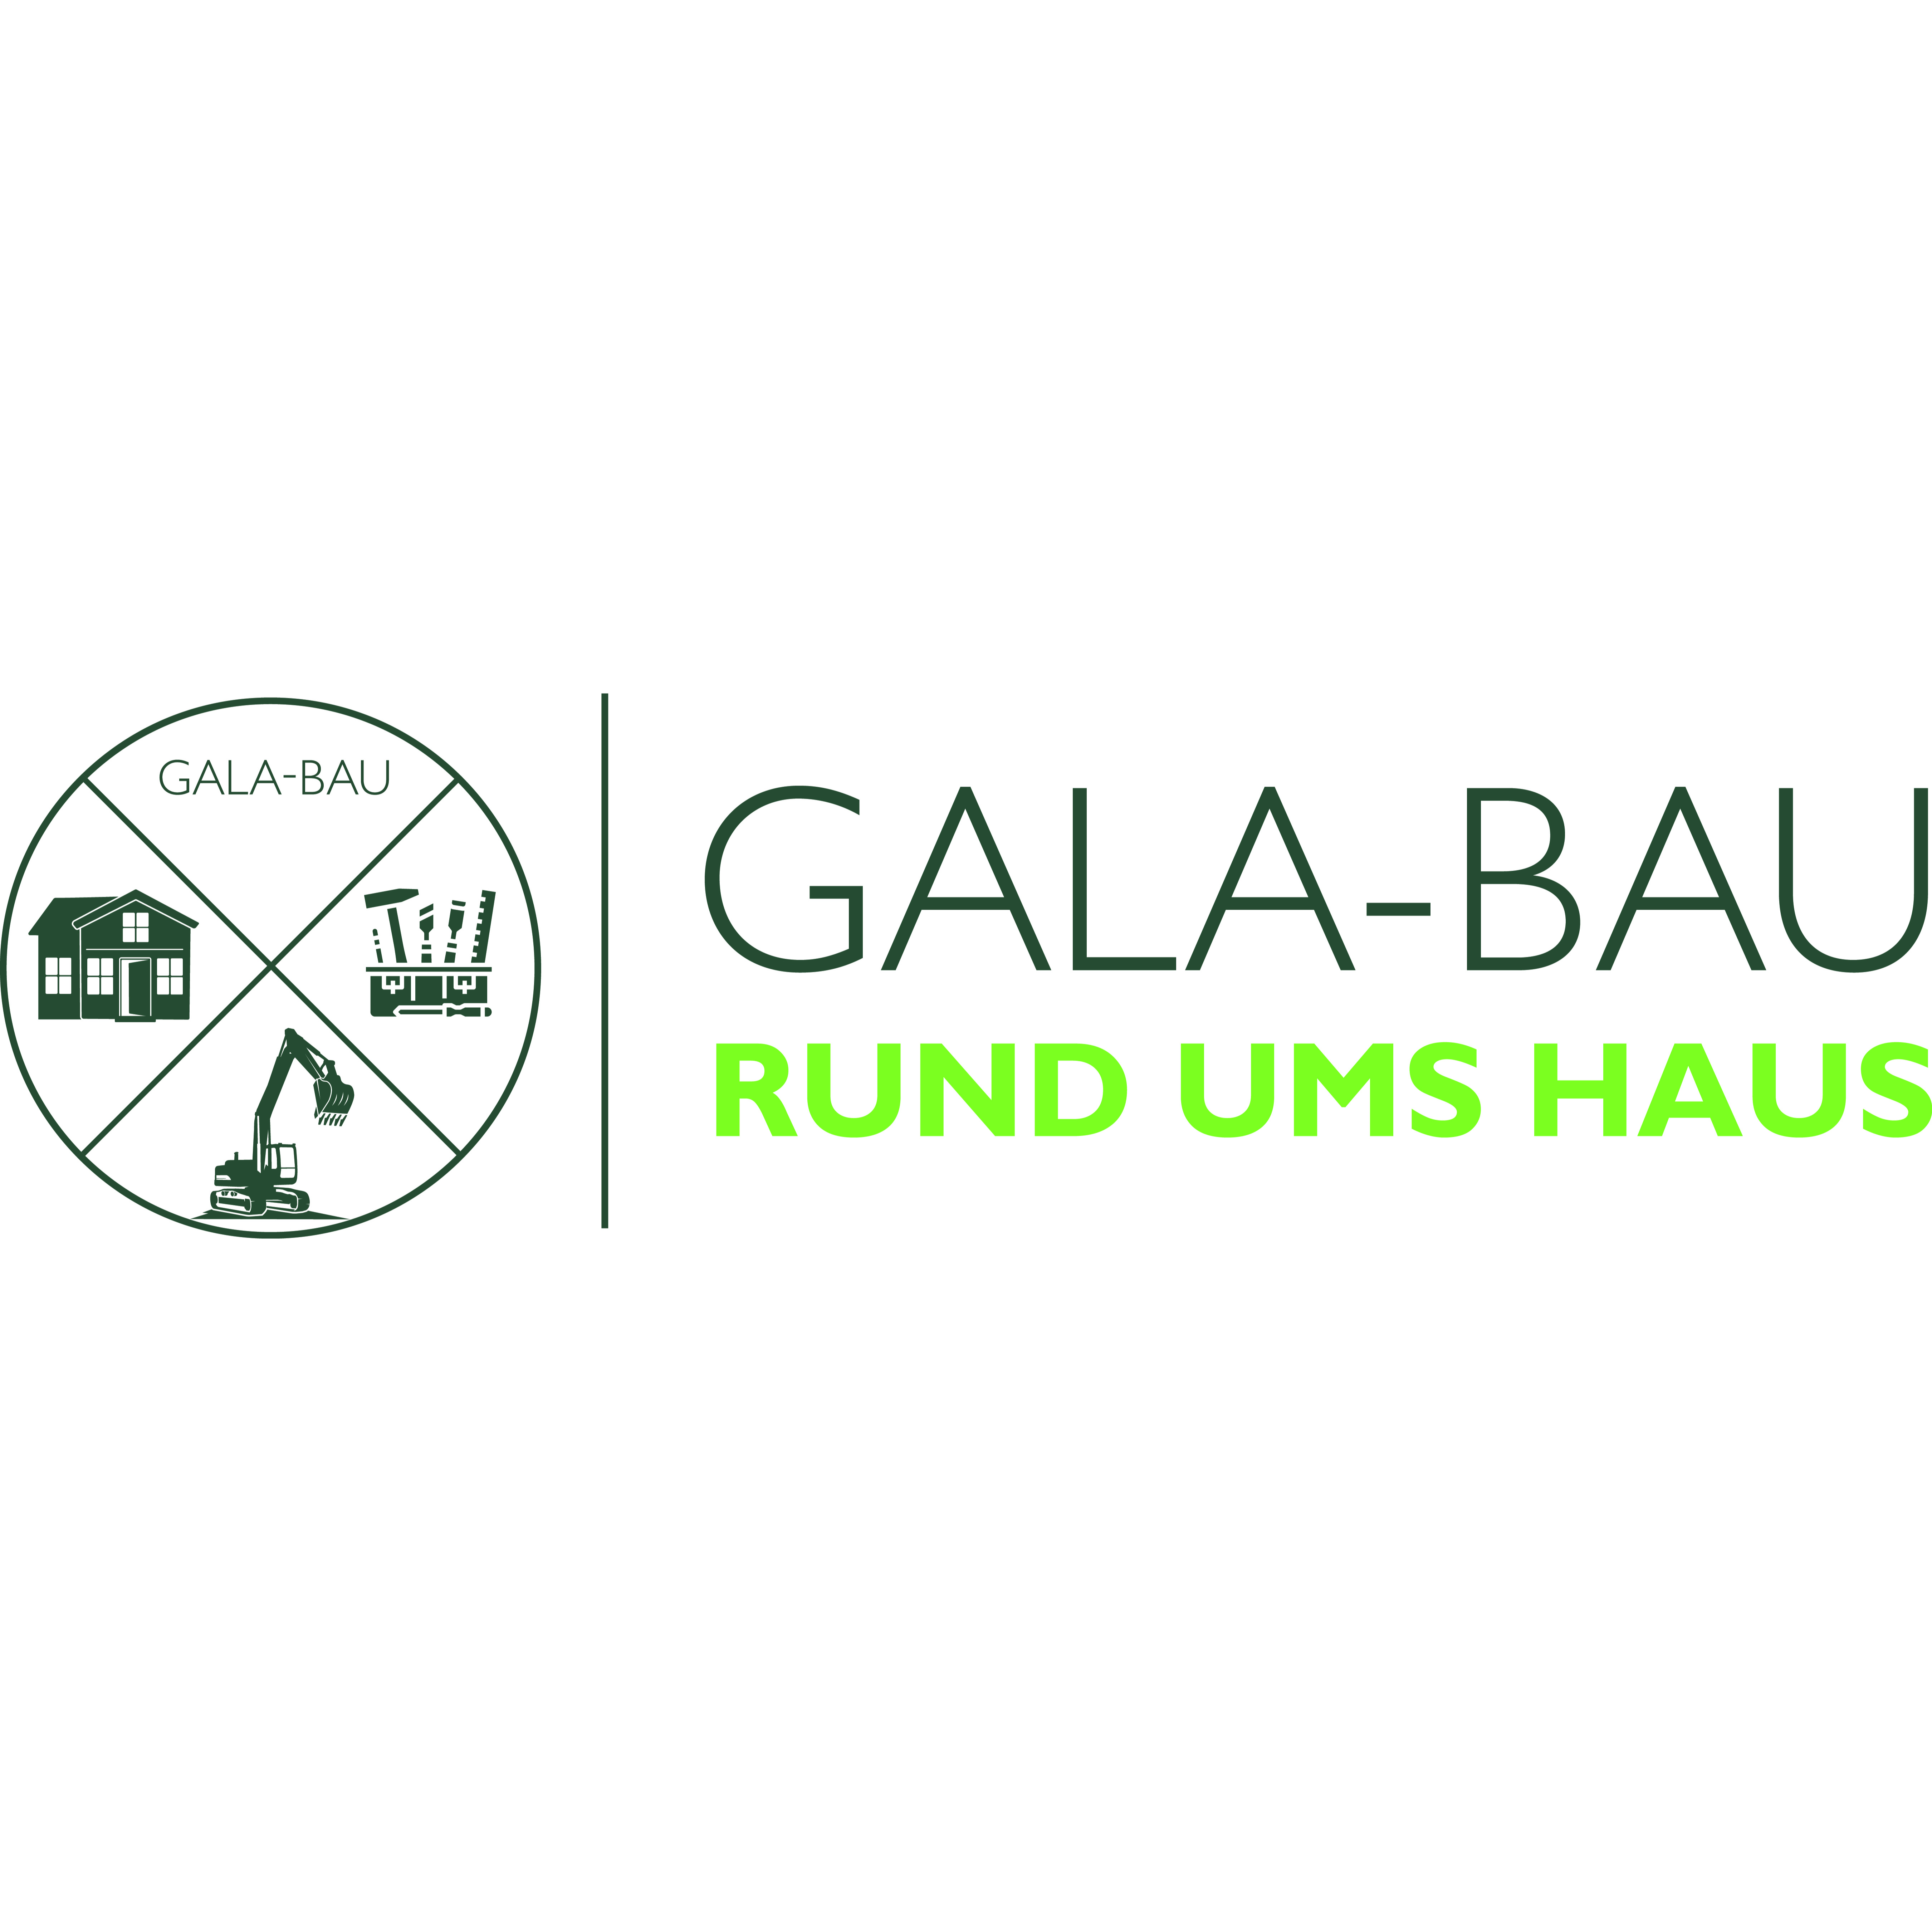 GALA-BAU Rund ums Haus in Wilhelmshaven - Logo